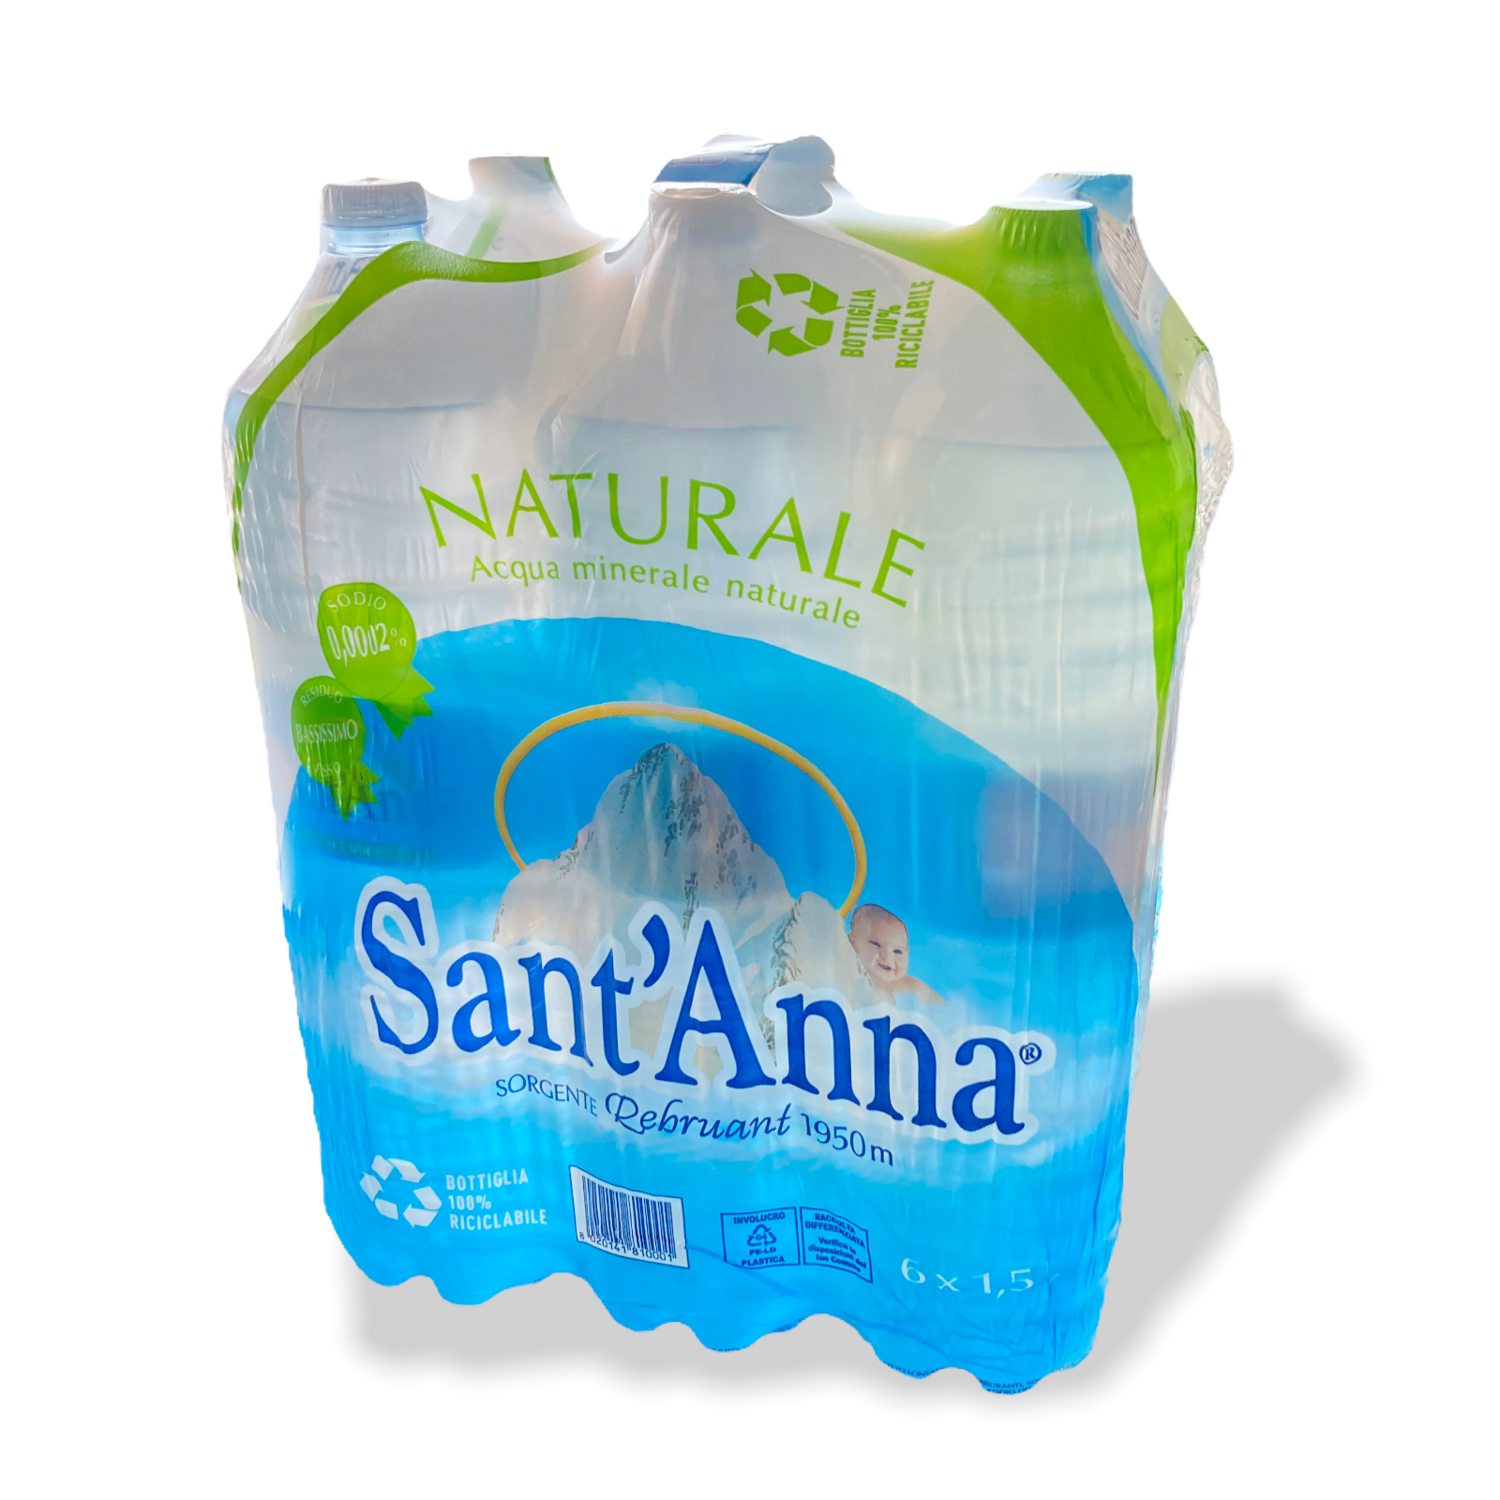 Acqua Minerale Naturale SANT'ANNA 6X1,5 L